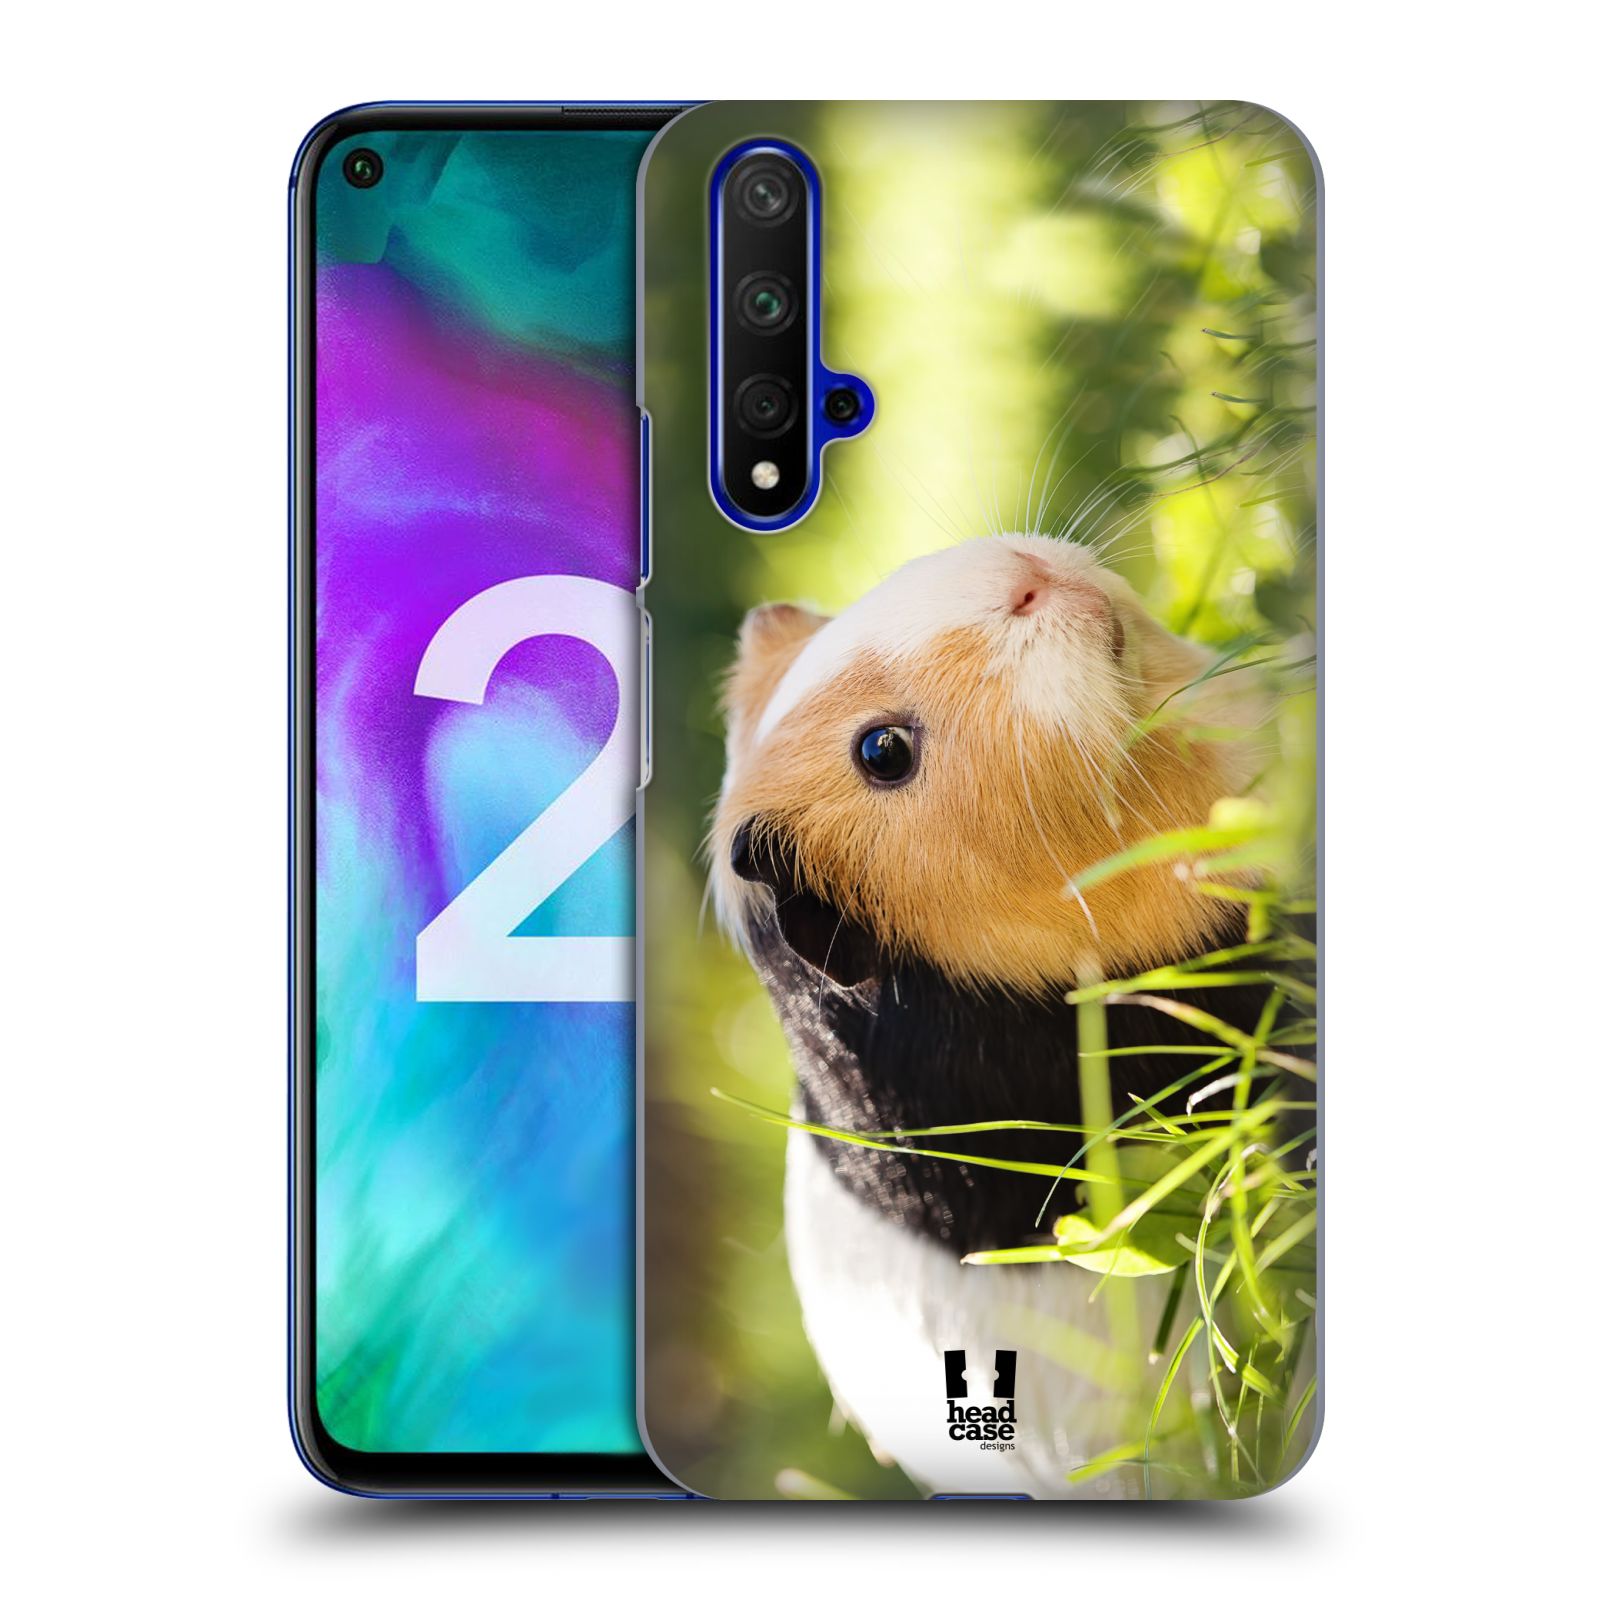 Pouzdro na mobil Honor 20 - HEAD CASE - vzor slavná zvířata foto morče